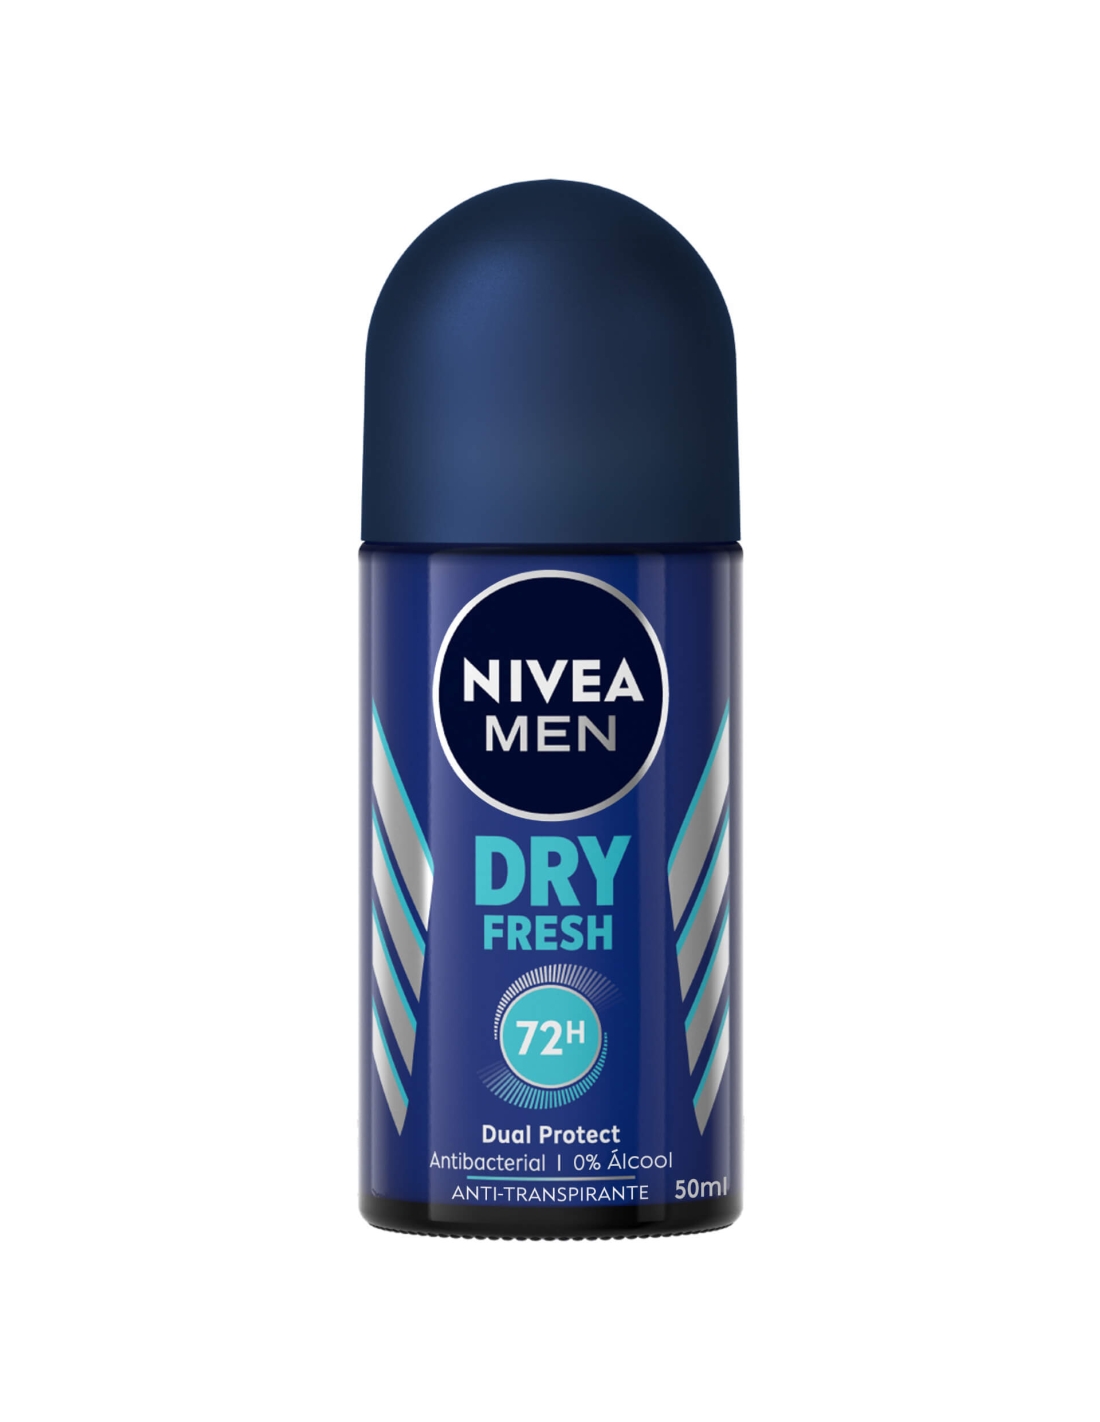 Nivea Men Dry Fresh 72h Roll-On 50ml